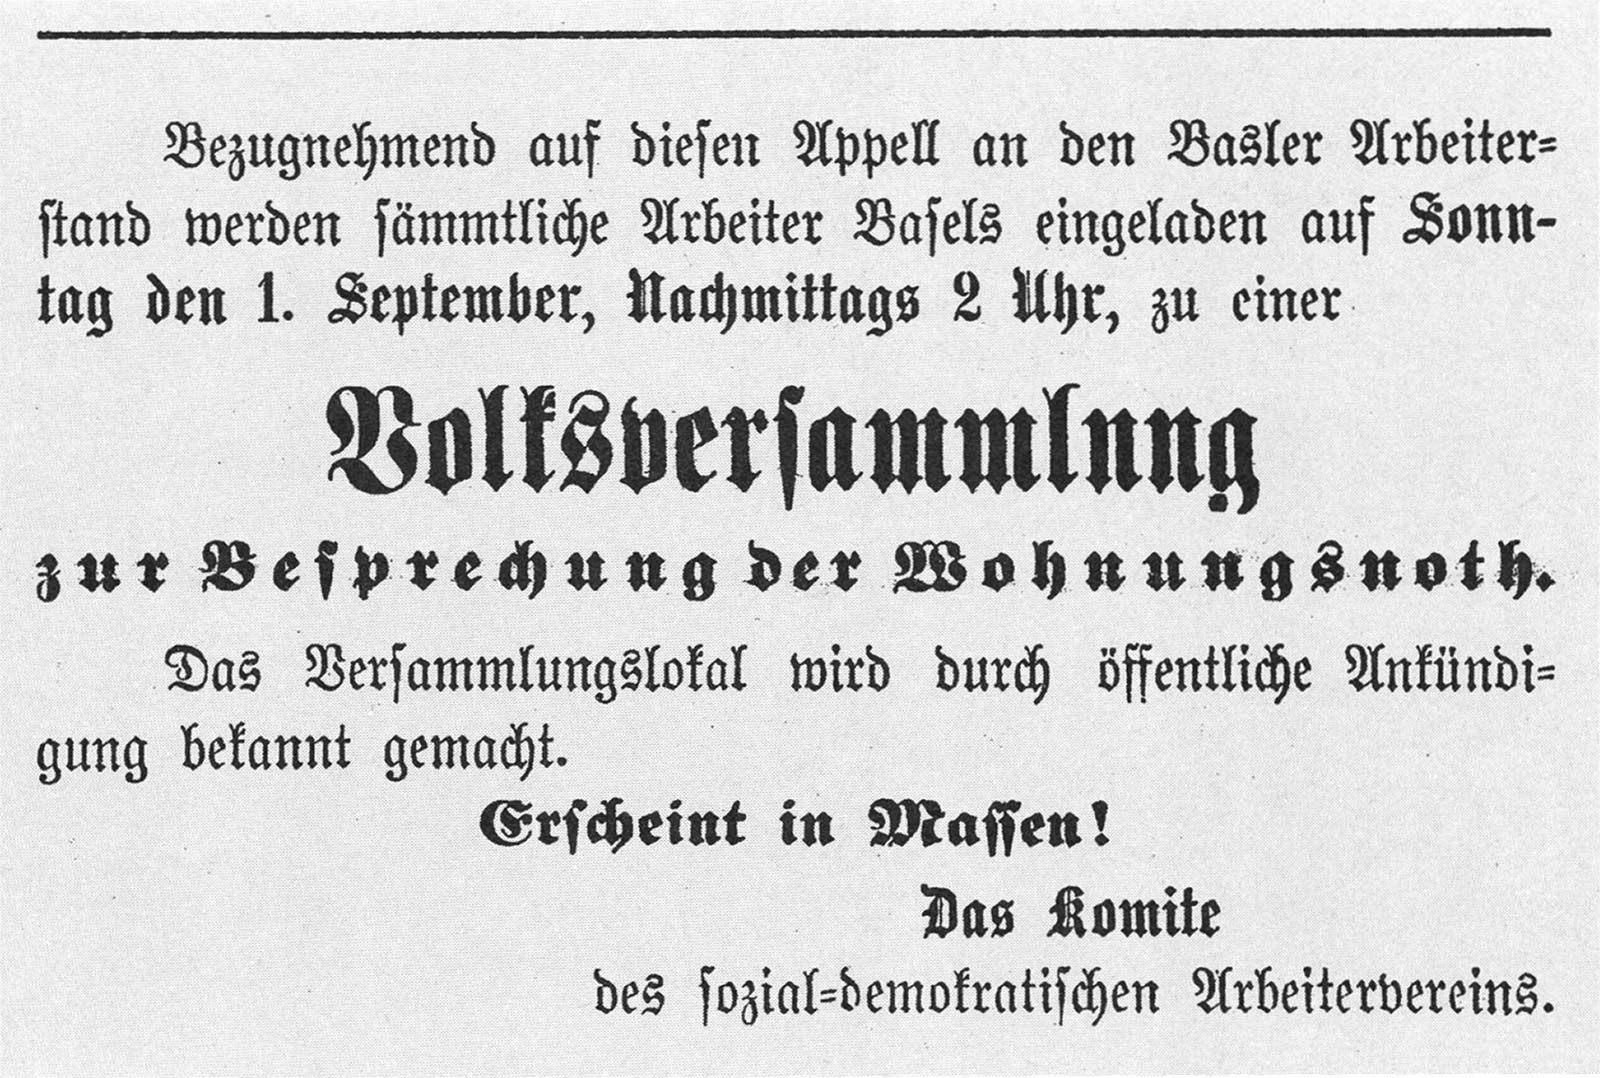 إعلان في إحدى الصحف مكتوب باللغة الألمانية القوطية